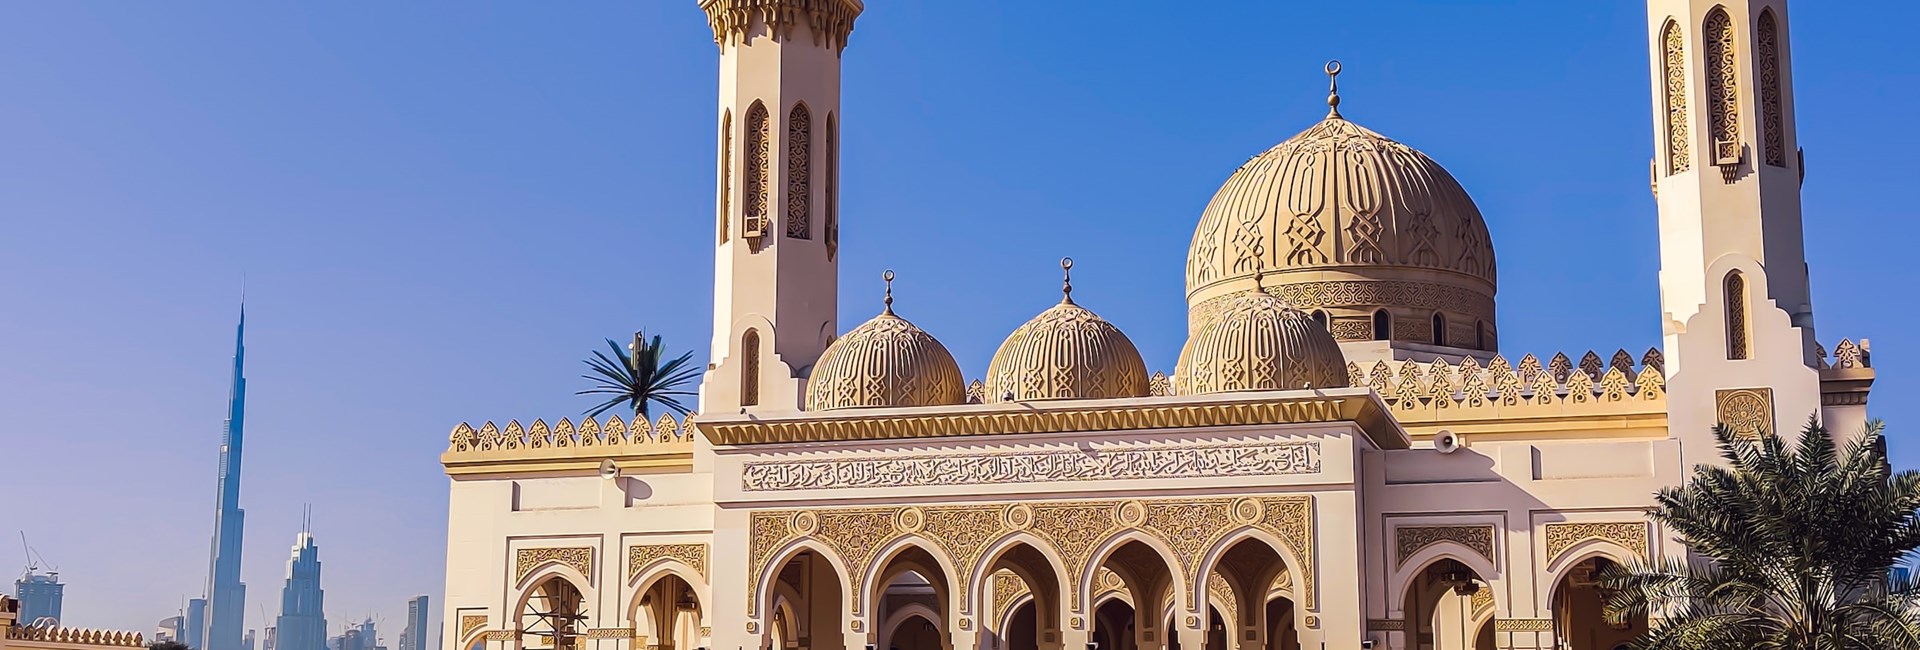 A photo of Jumeirah Mosque